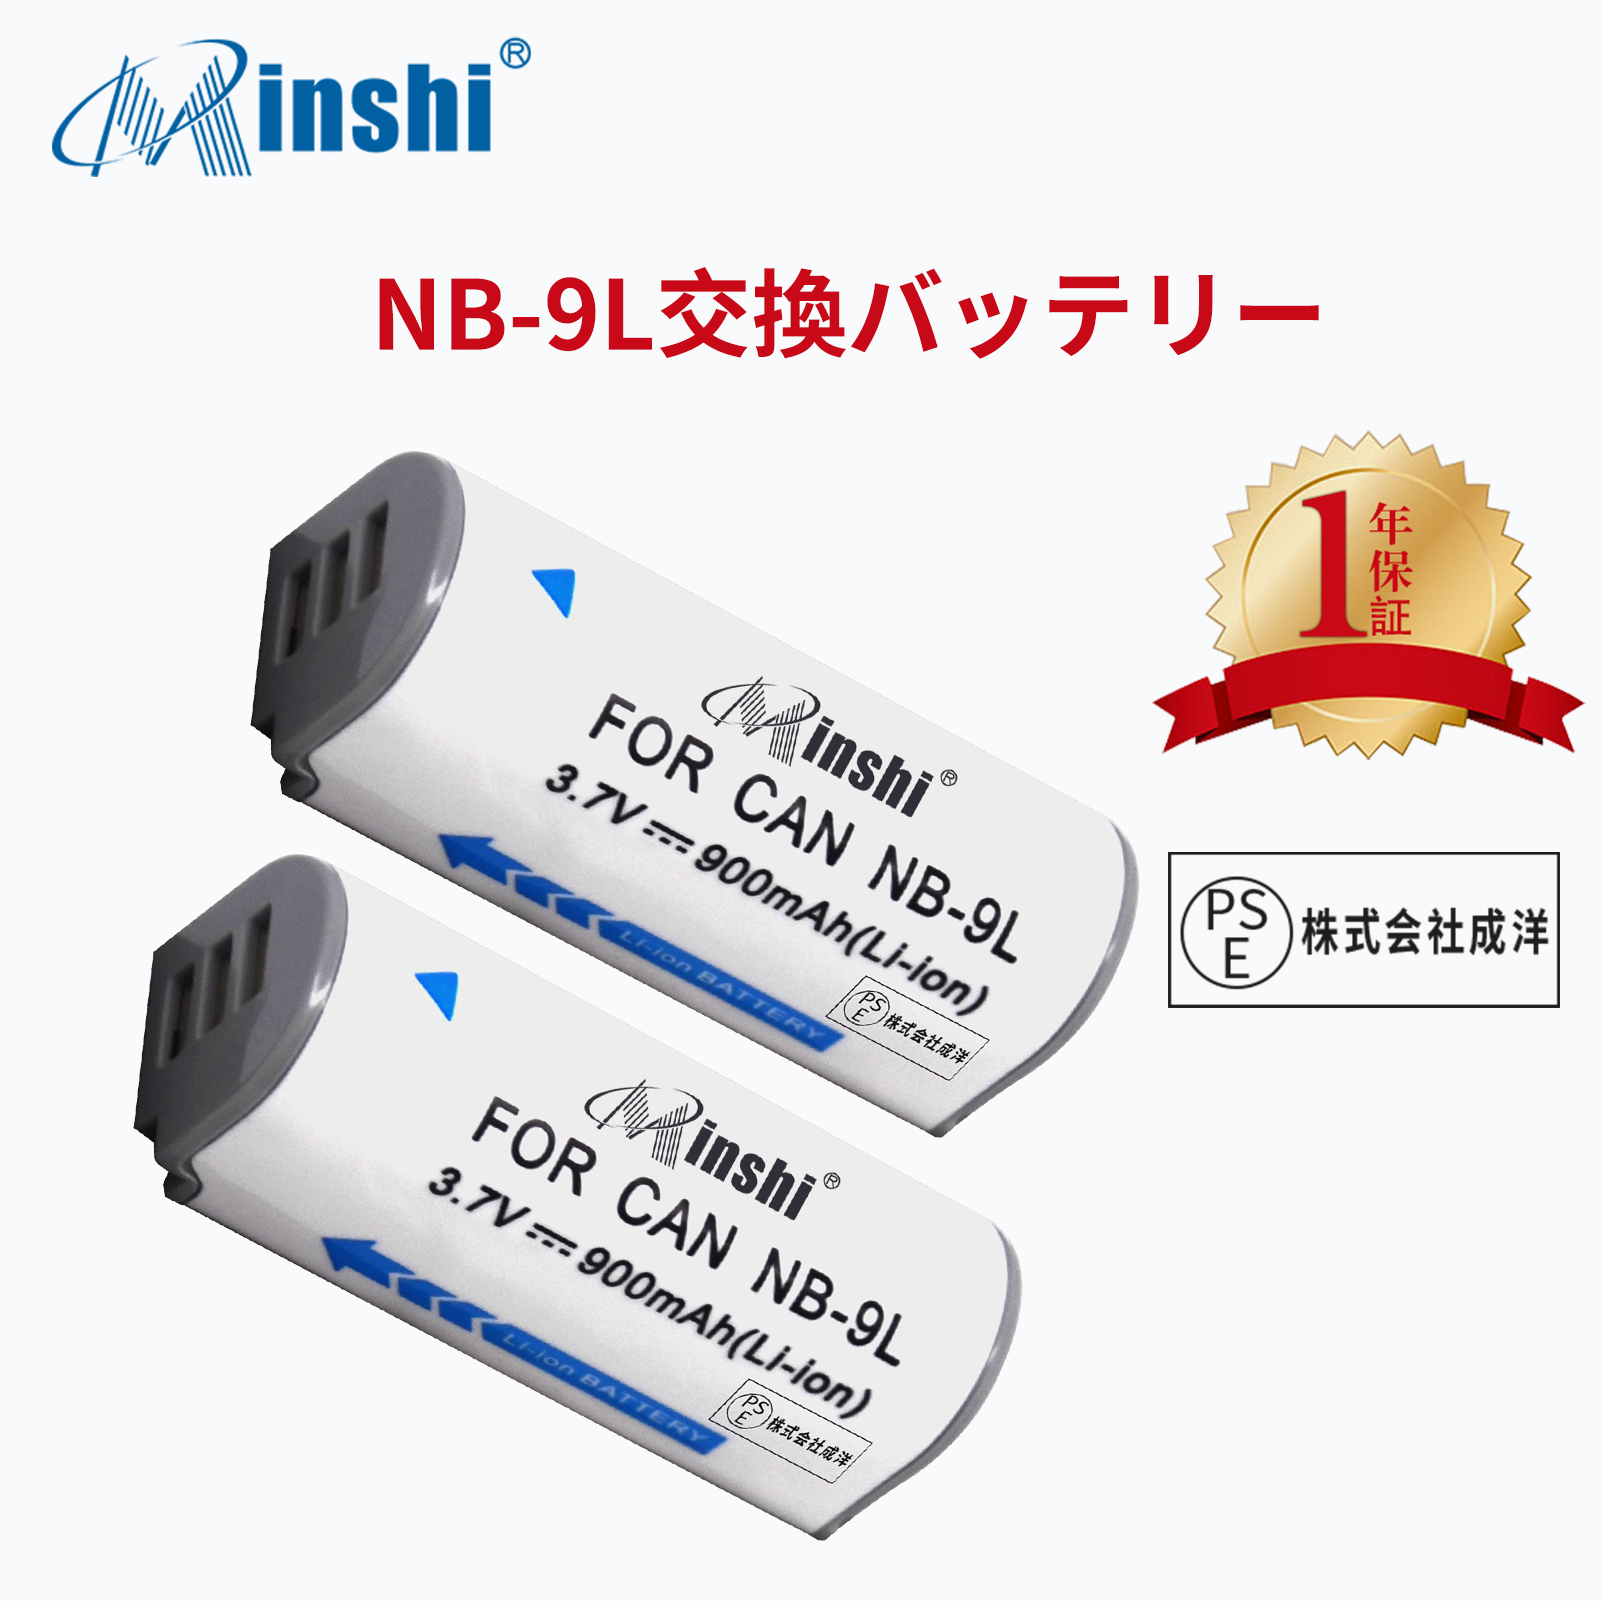 【２個セット】minshi Panasonic NB-9L IXY 51S【900mAh 3.7V】PSE認定済 高品質交換用バッテリー